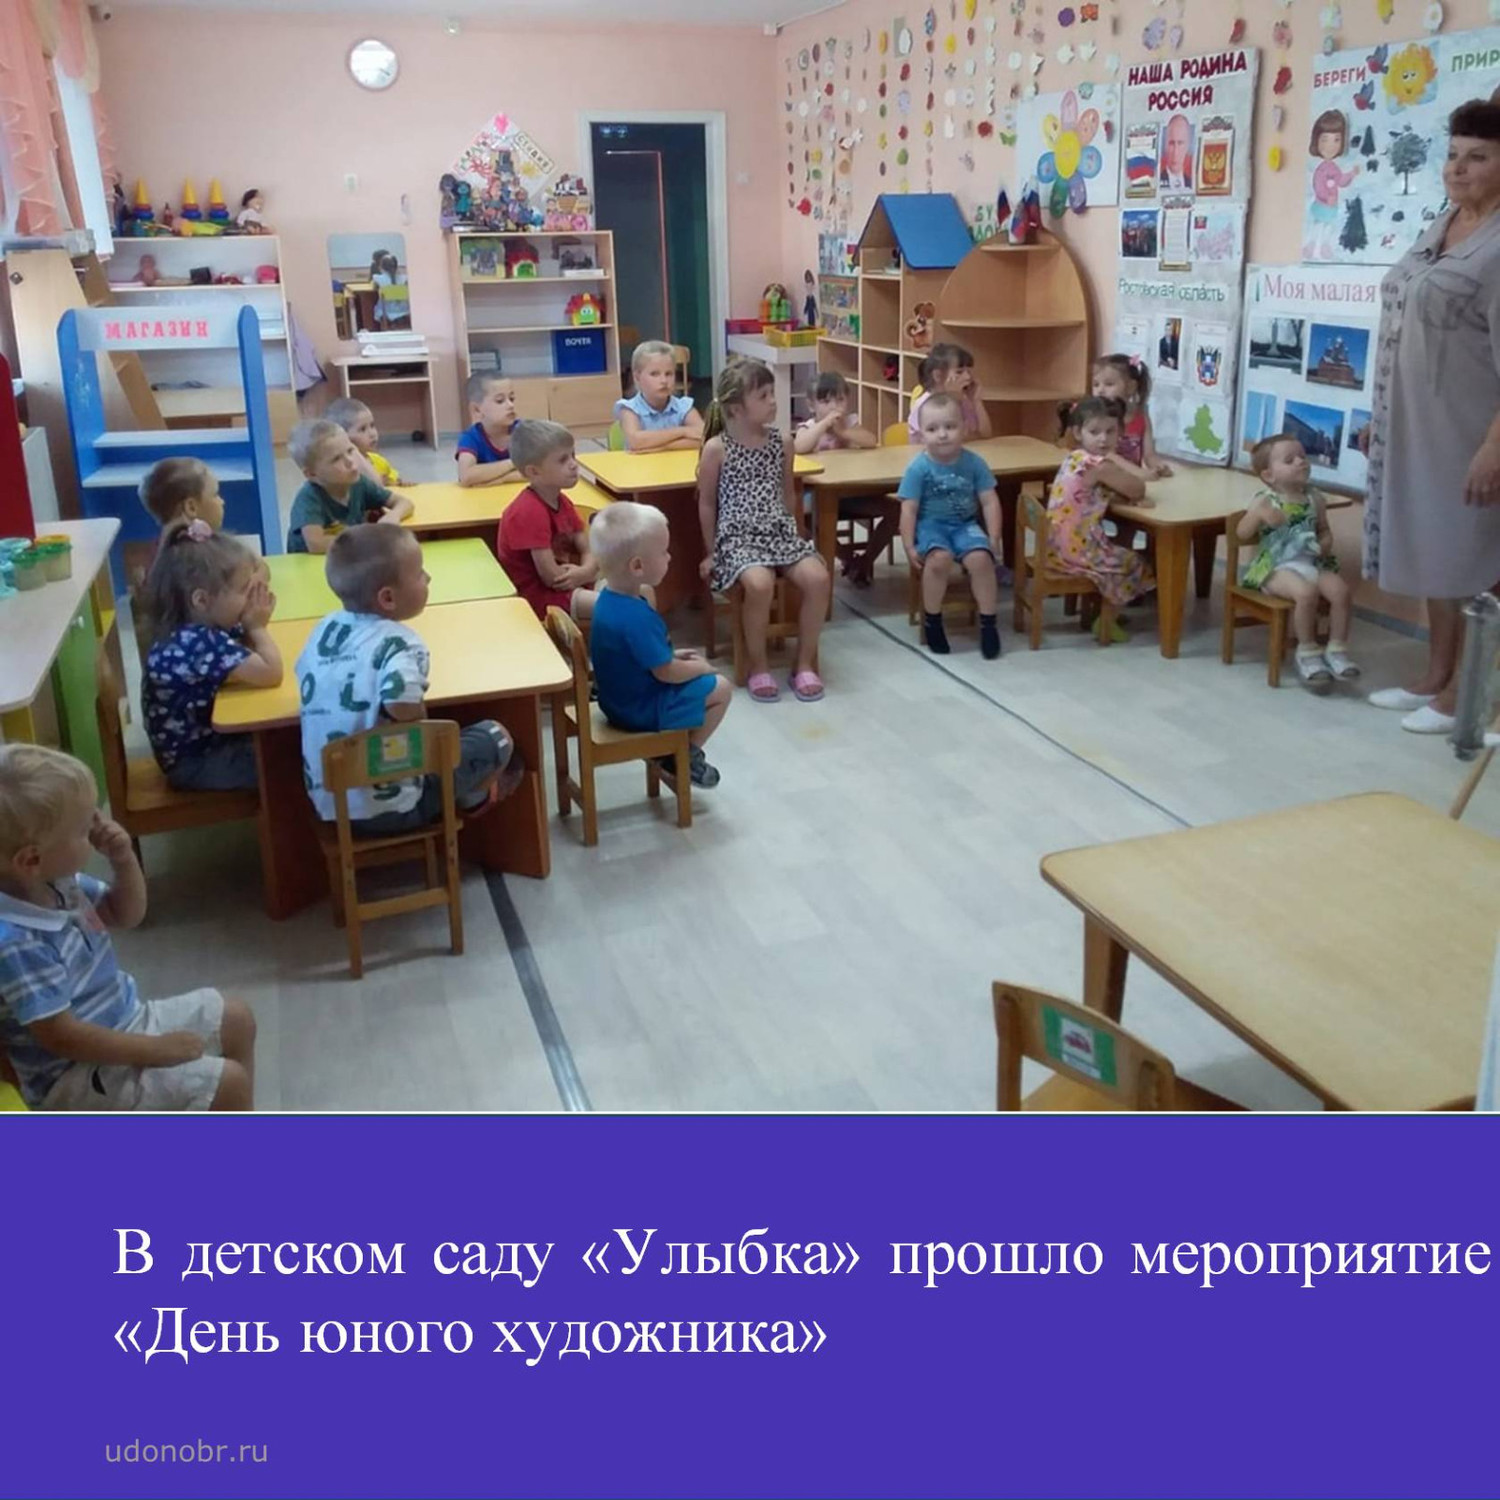 В детском саду «Улыбка» прошло мероприятие «День юного художника»